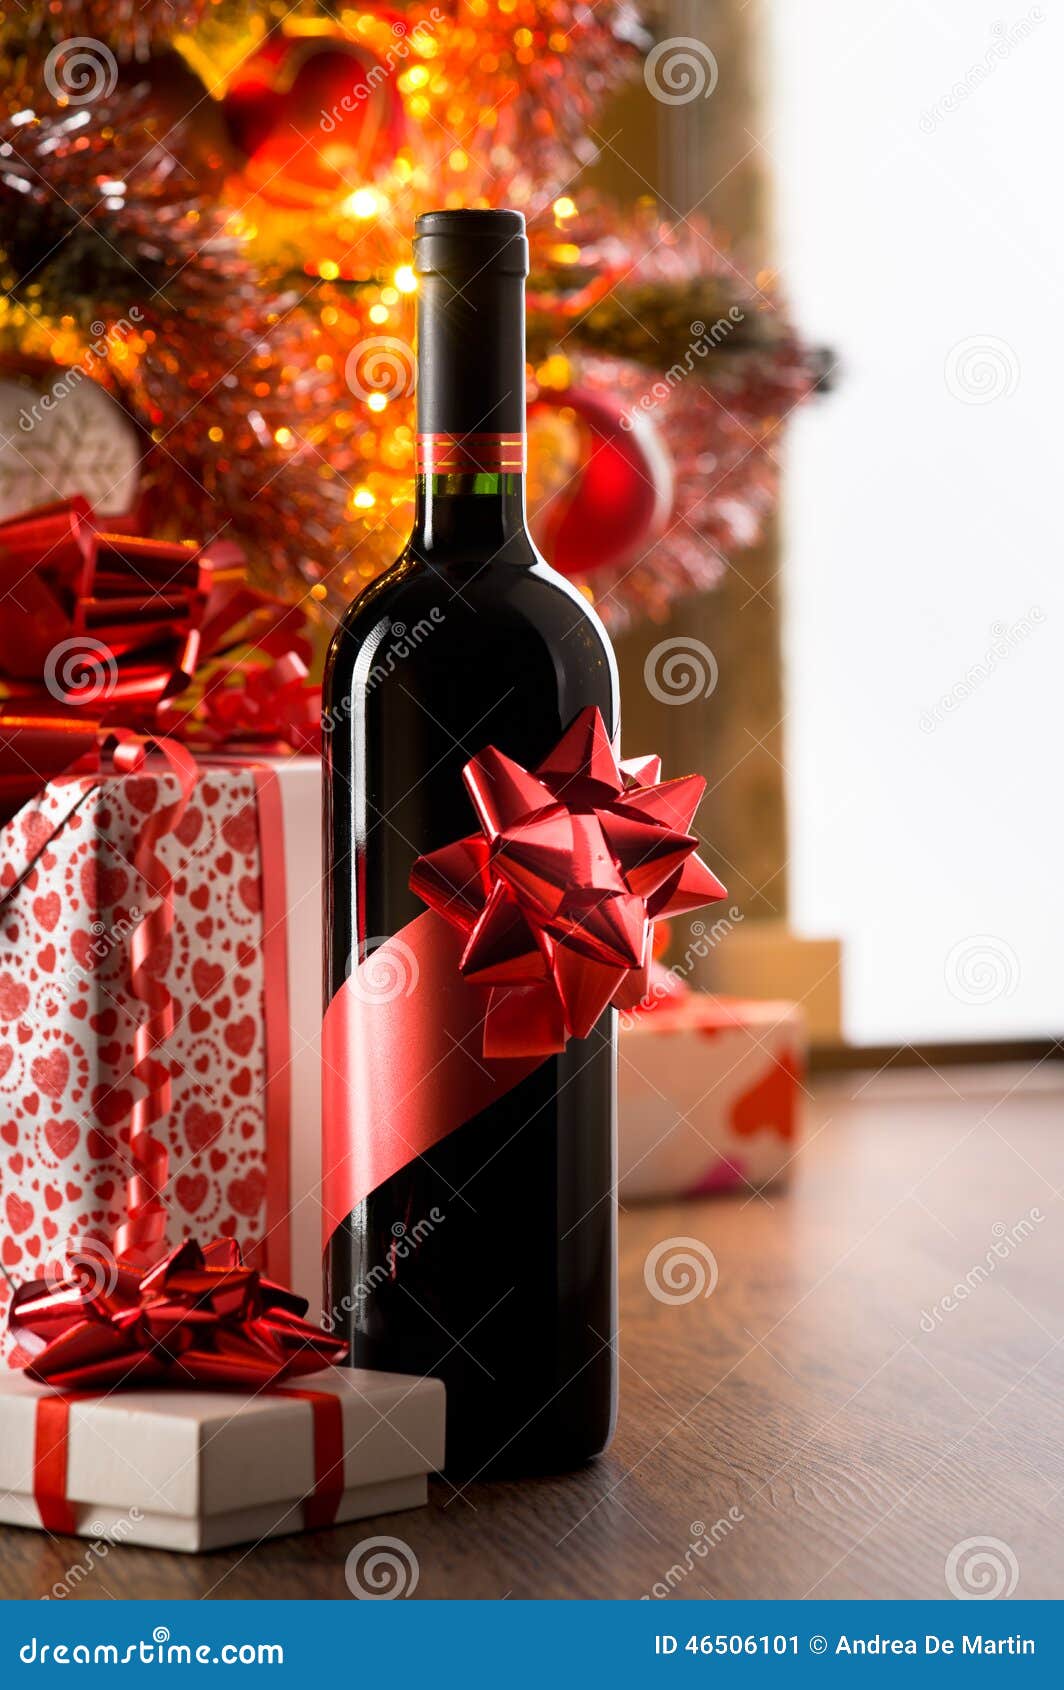 葡萄酒庄开张送什么礼物最好